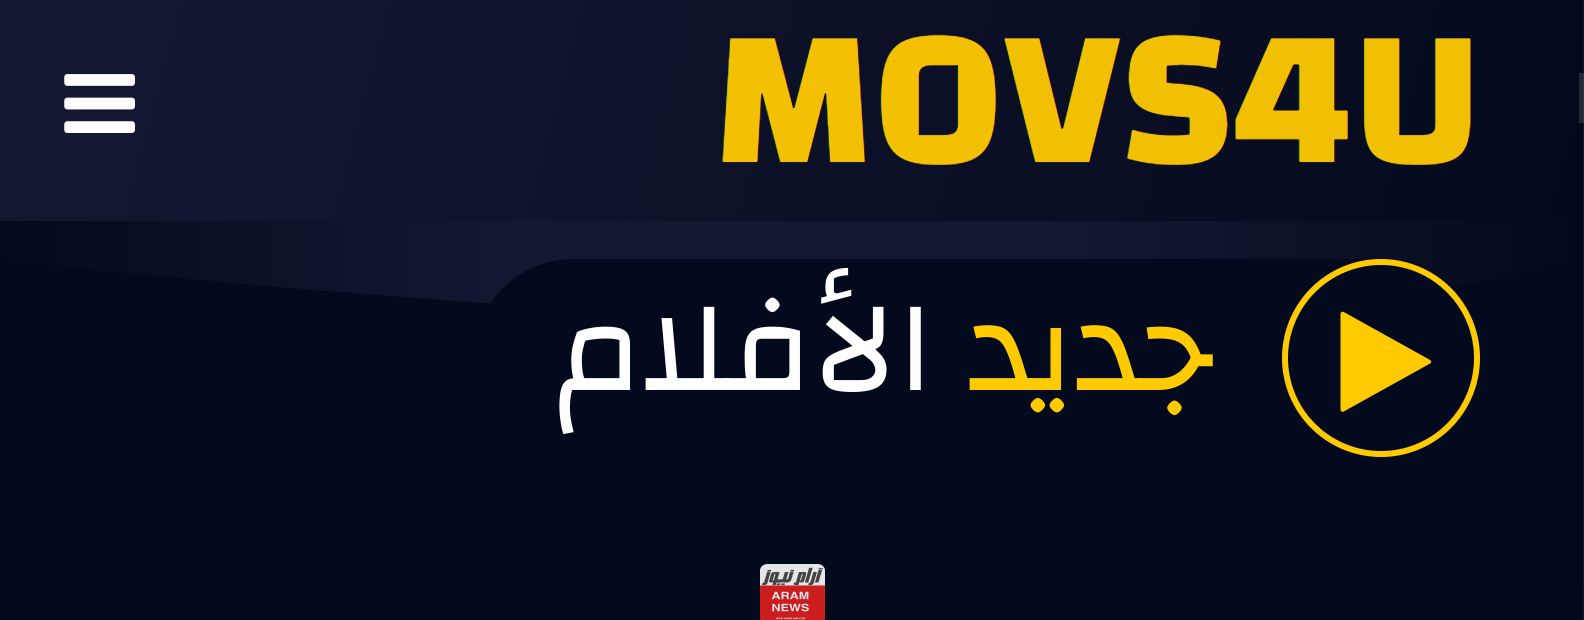 رابط موقع موفيز فور يو Movs4u لمشاهدة الافلام والمسلسلات الجديدة العربية والاجنبية مجانا